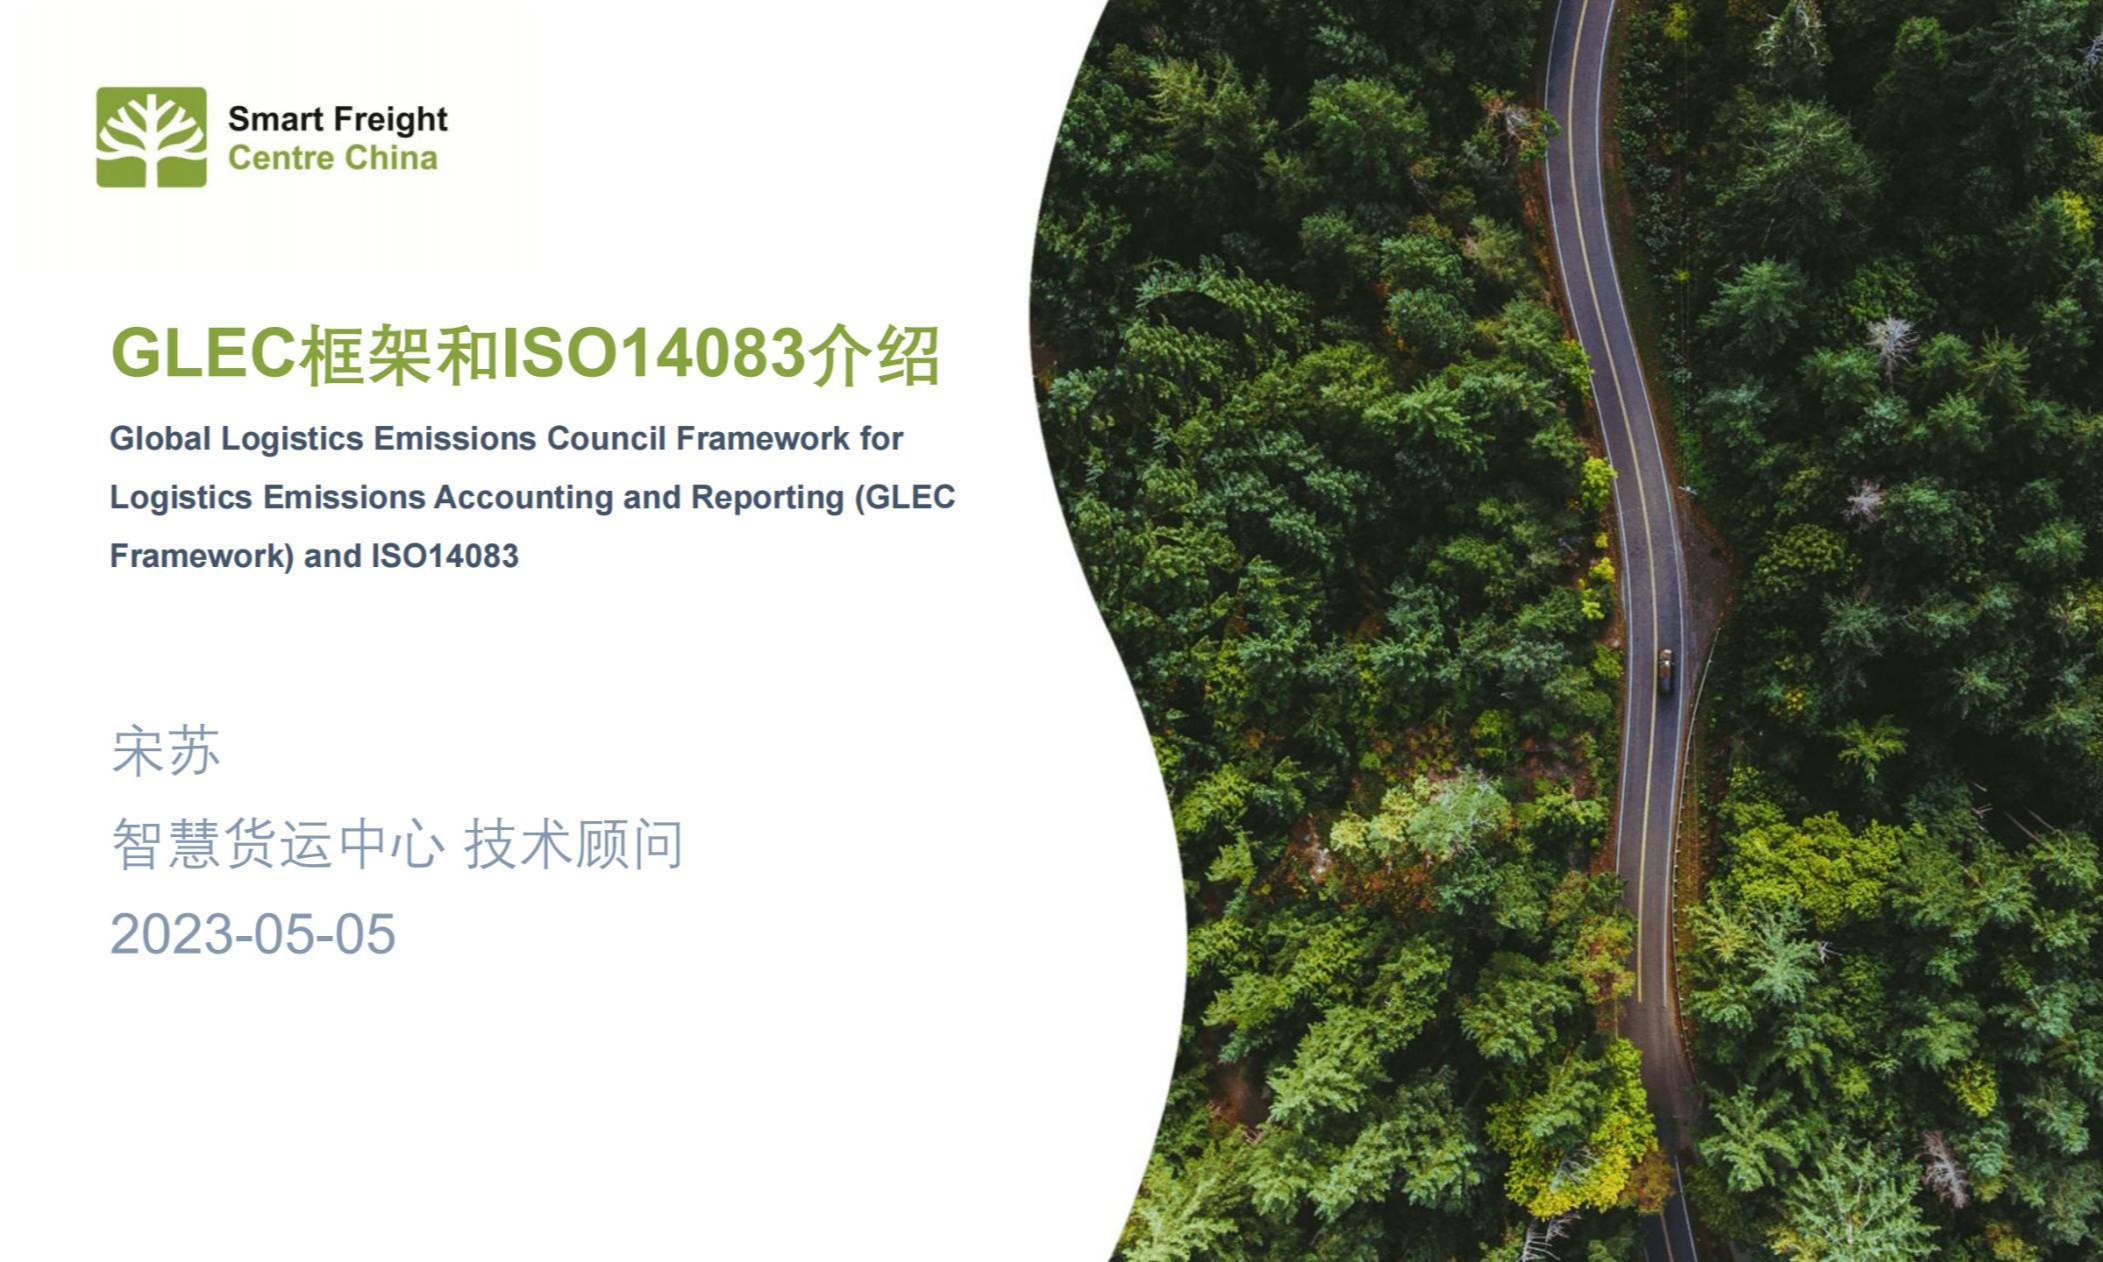 低碳解读②宋苏-GLEC框架和ISO14083介绍